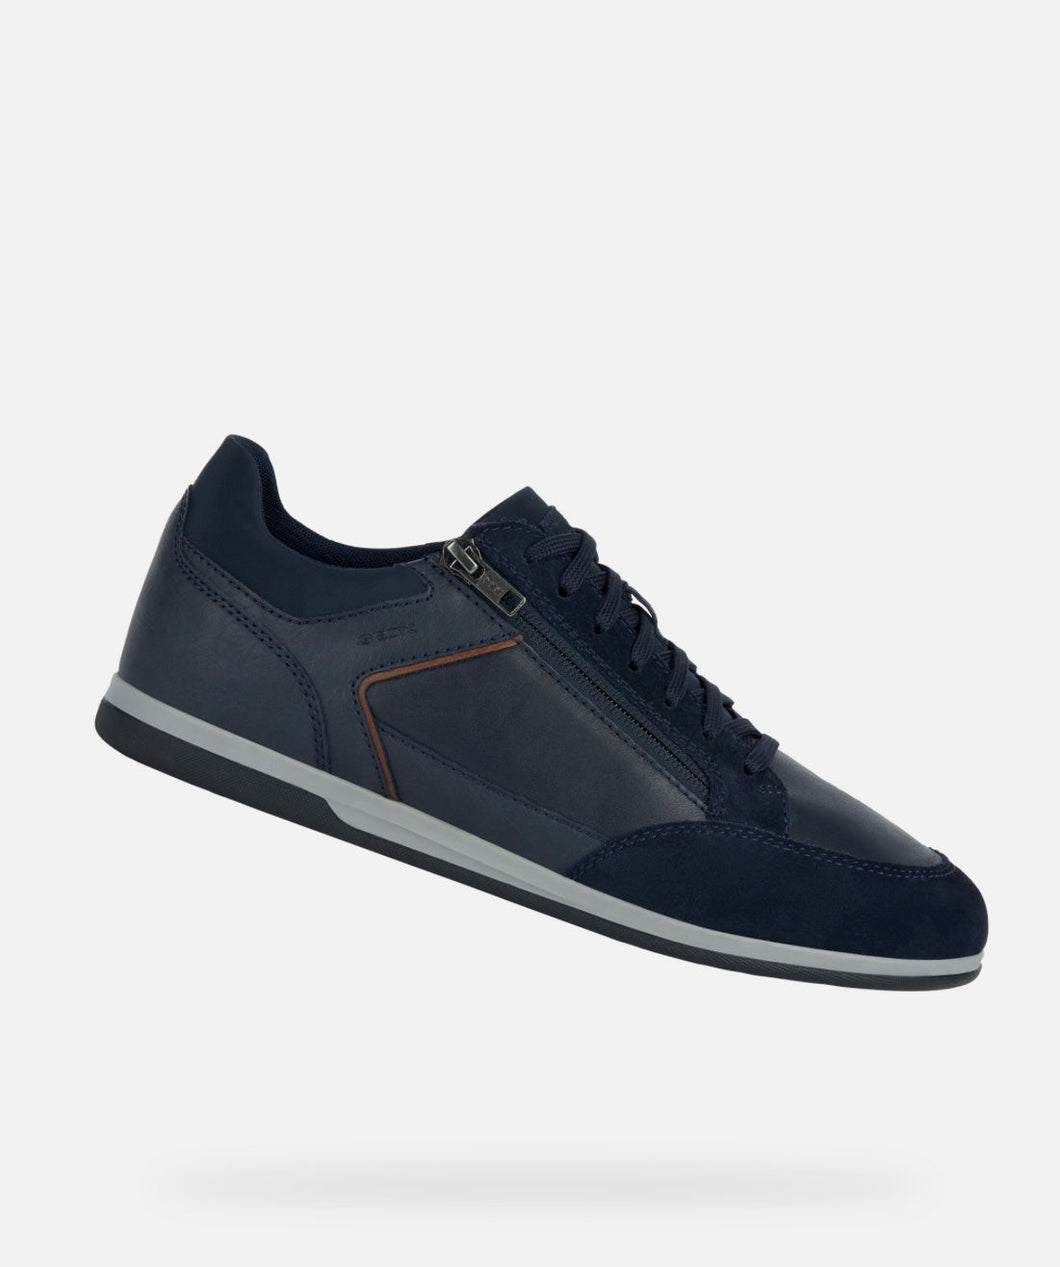 New Geox Navy Zip Up Sneaker